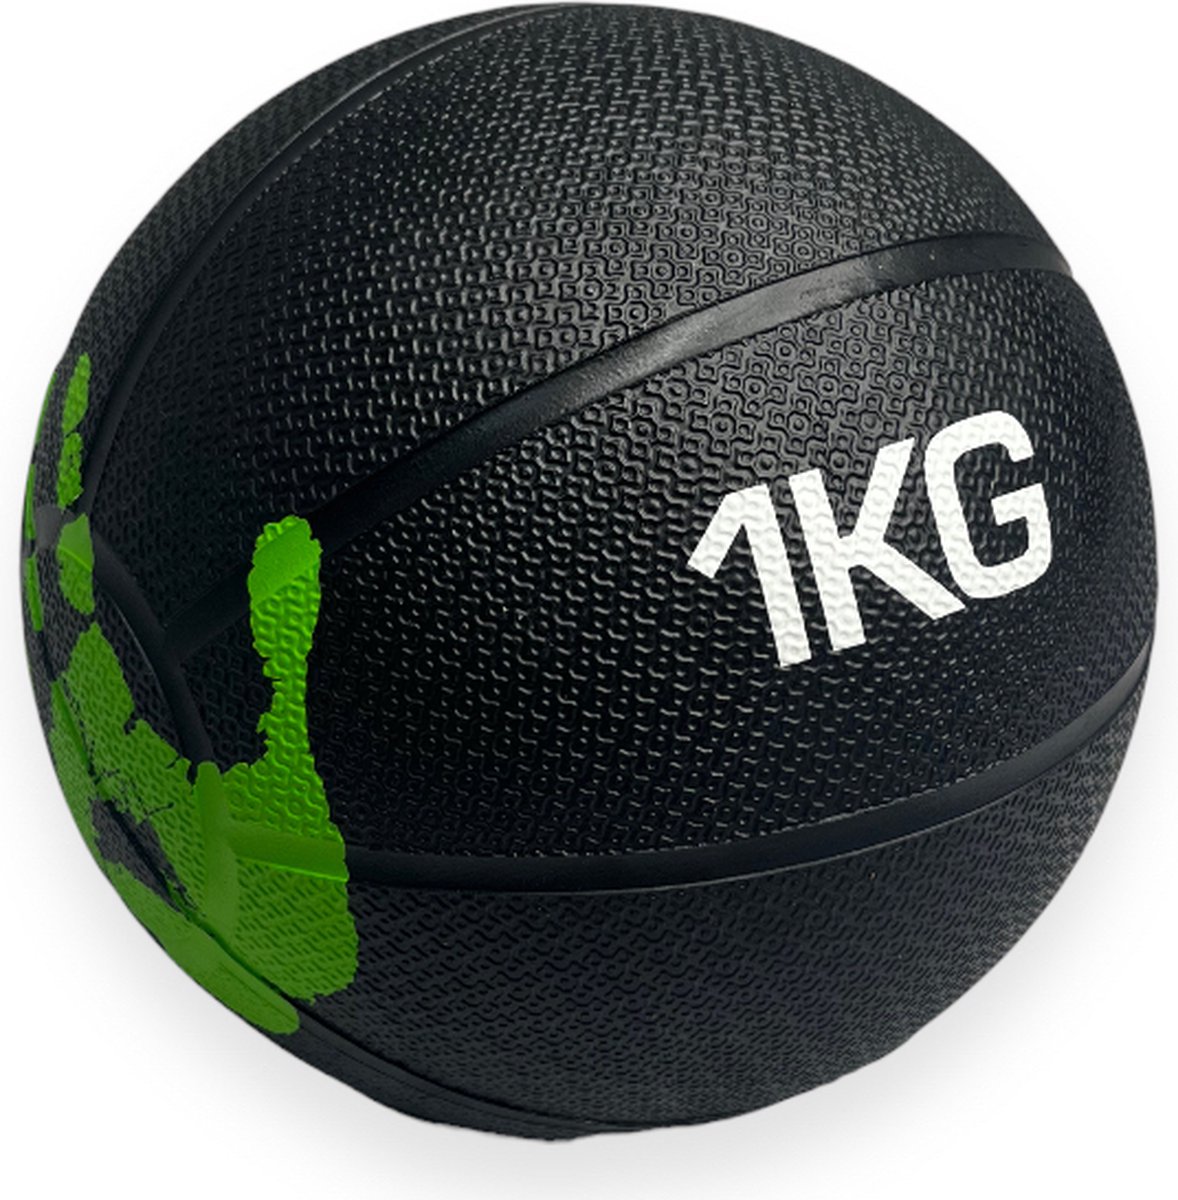 Padisport - Medicijnballen - Medicine Ball - Medicine Ball 1 Kg - Gewichtsbal - Krachtbal - Krachtbal 1 Kg